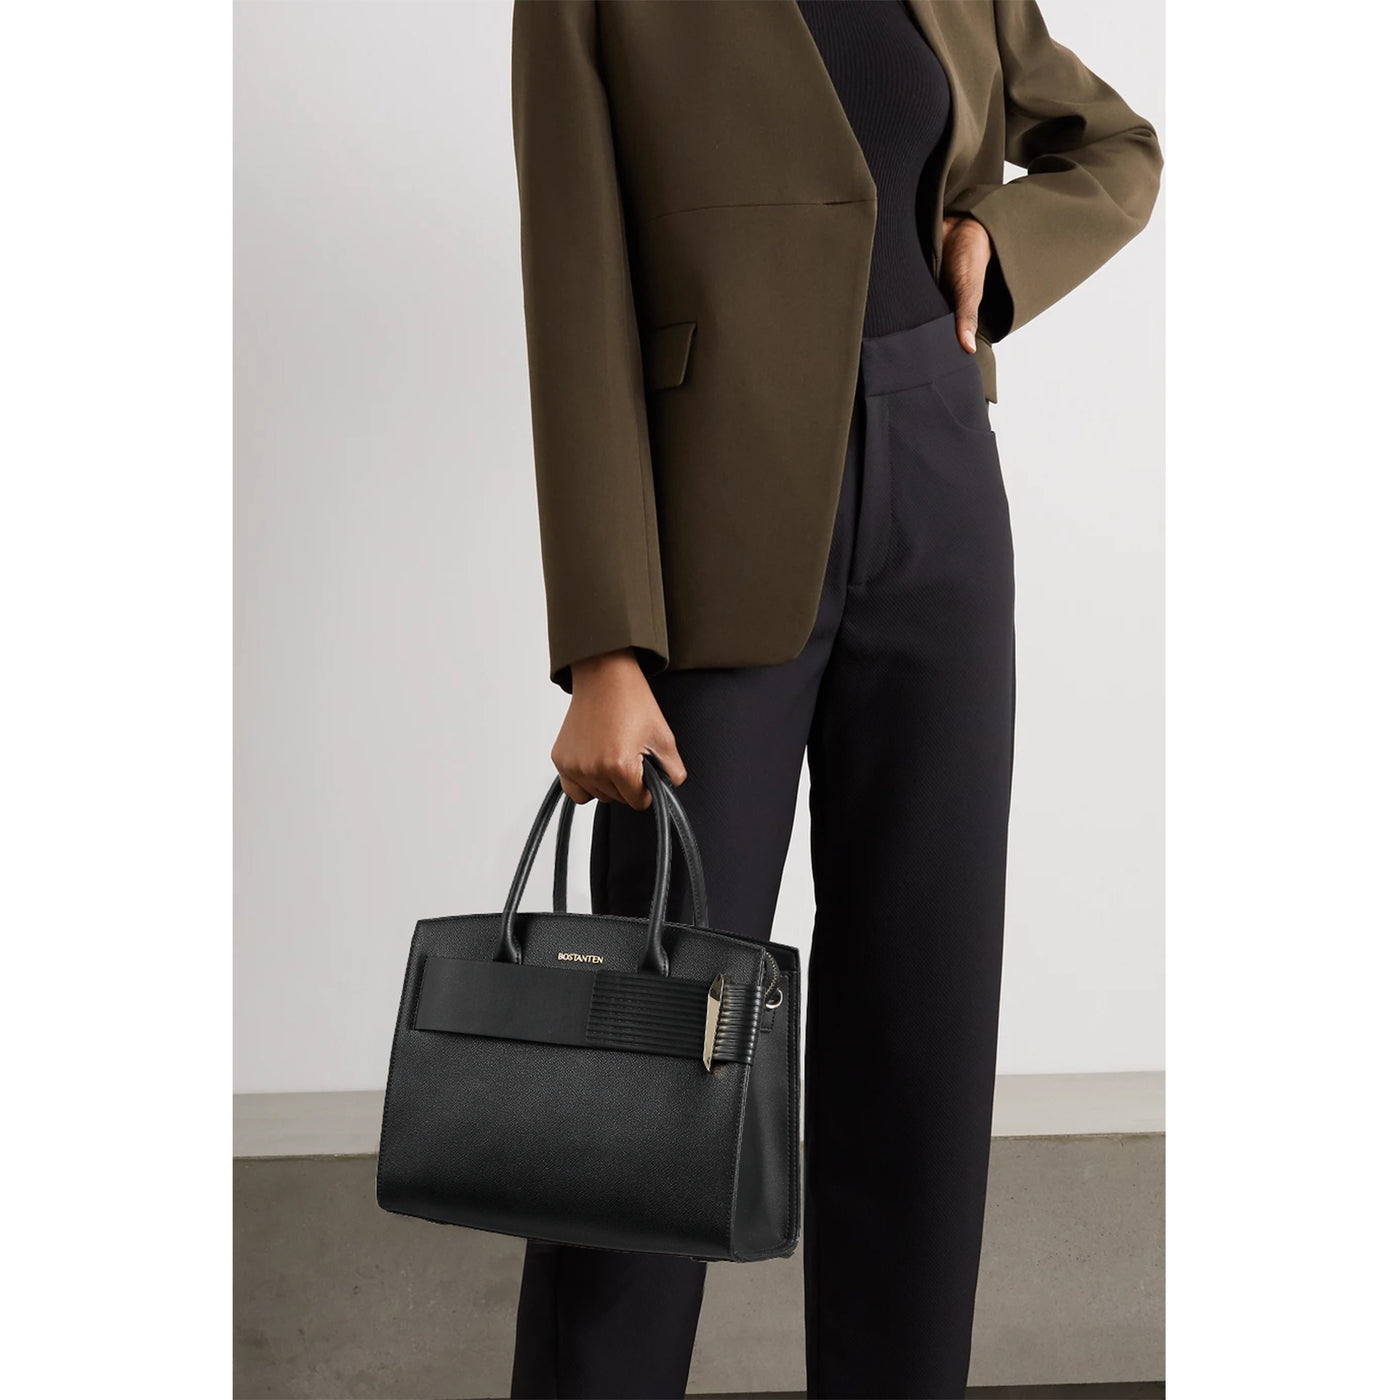 BOSTANTEN Women Handbags Leather Ladies Shoulder Bags Designer Top Handle Work Travel Satchel Tote Bag - BOSTANTEN